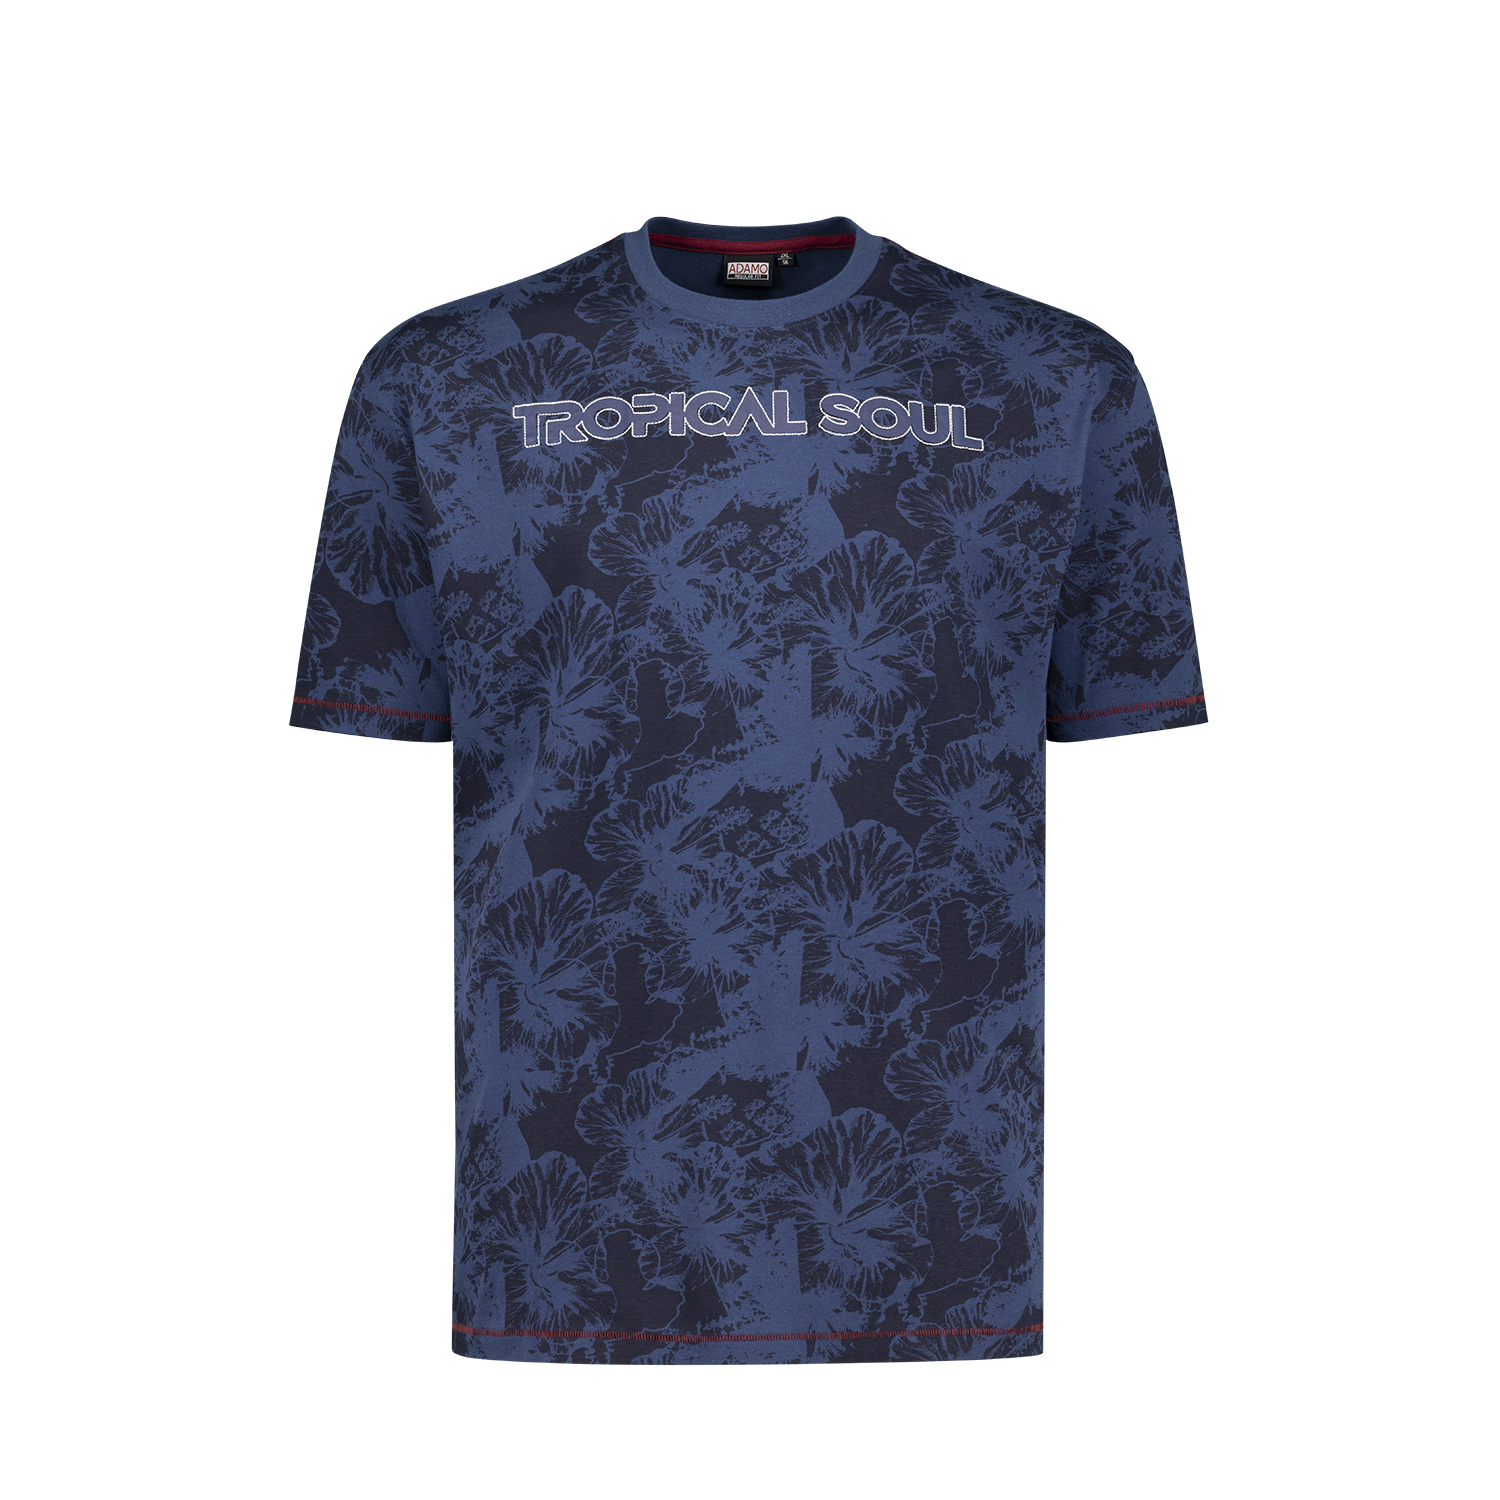 Herren T-Shirt mit Print und Stickerei Rundhals Serie "Tropical" ADAMO Kurzarm Übergrößen XXL-10XL